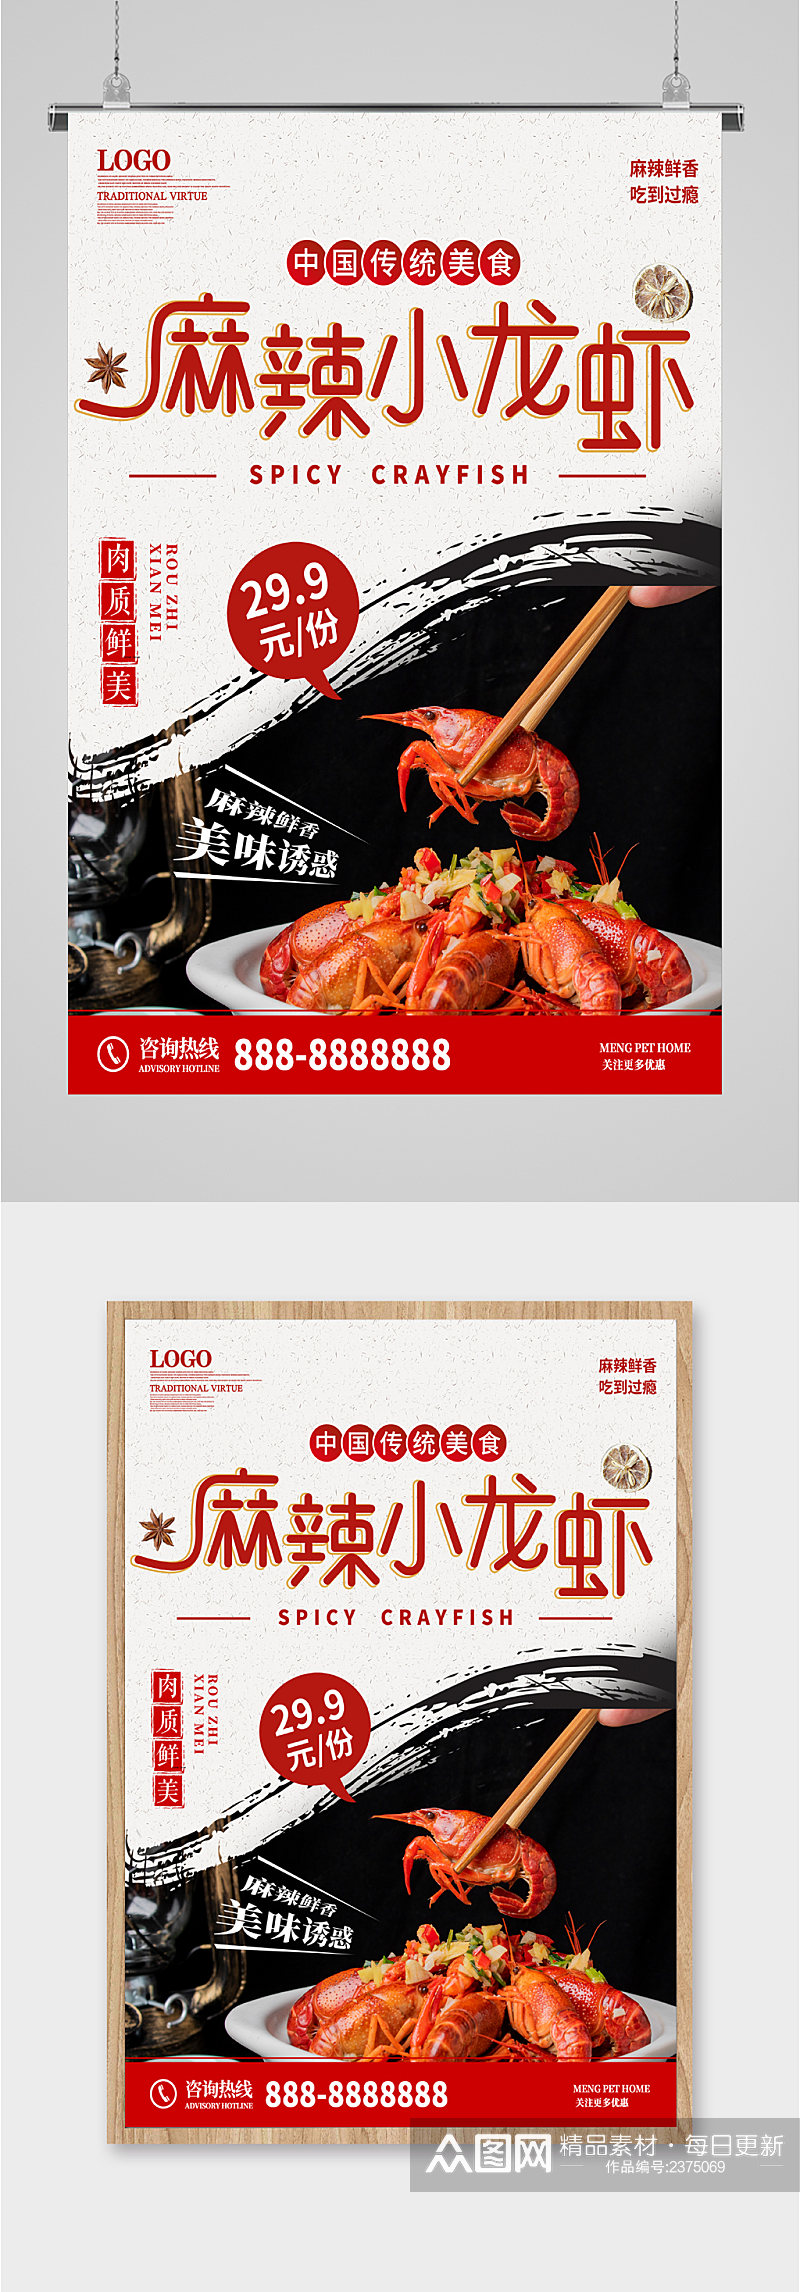 麻辣小龙虾优惠海报素材